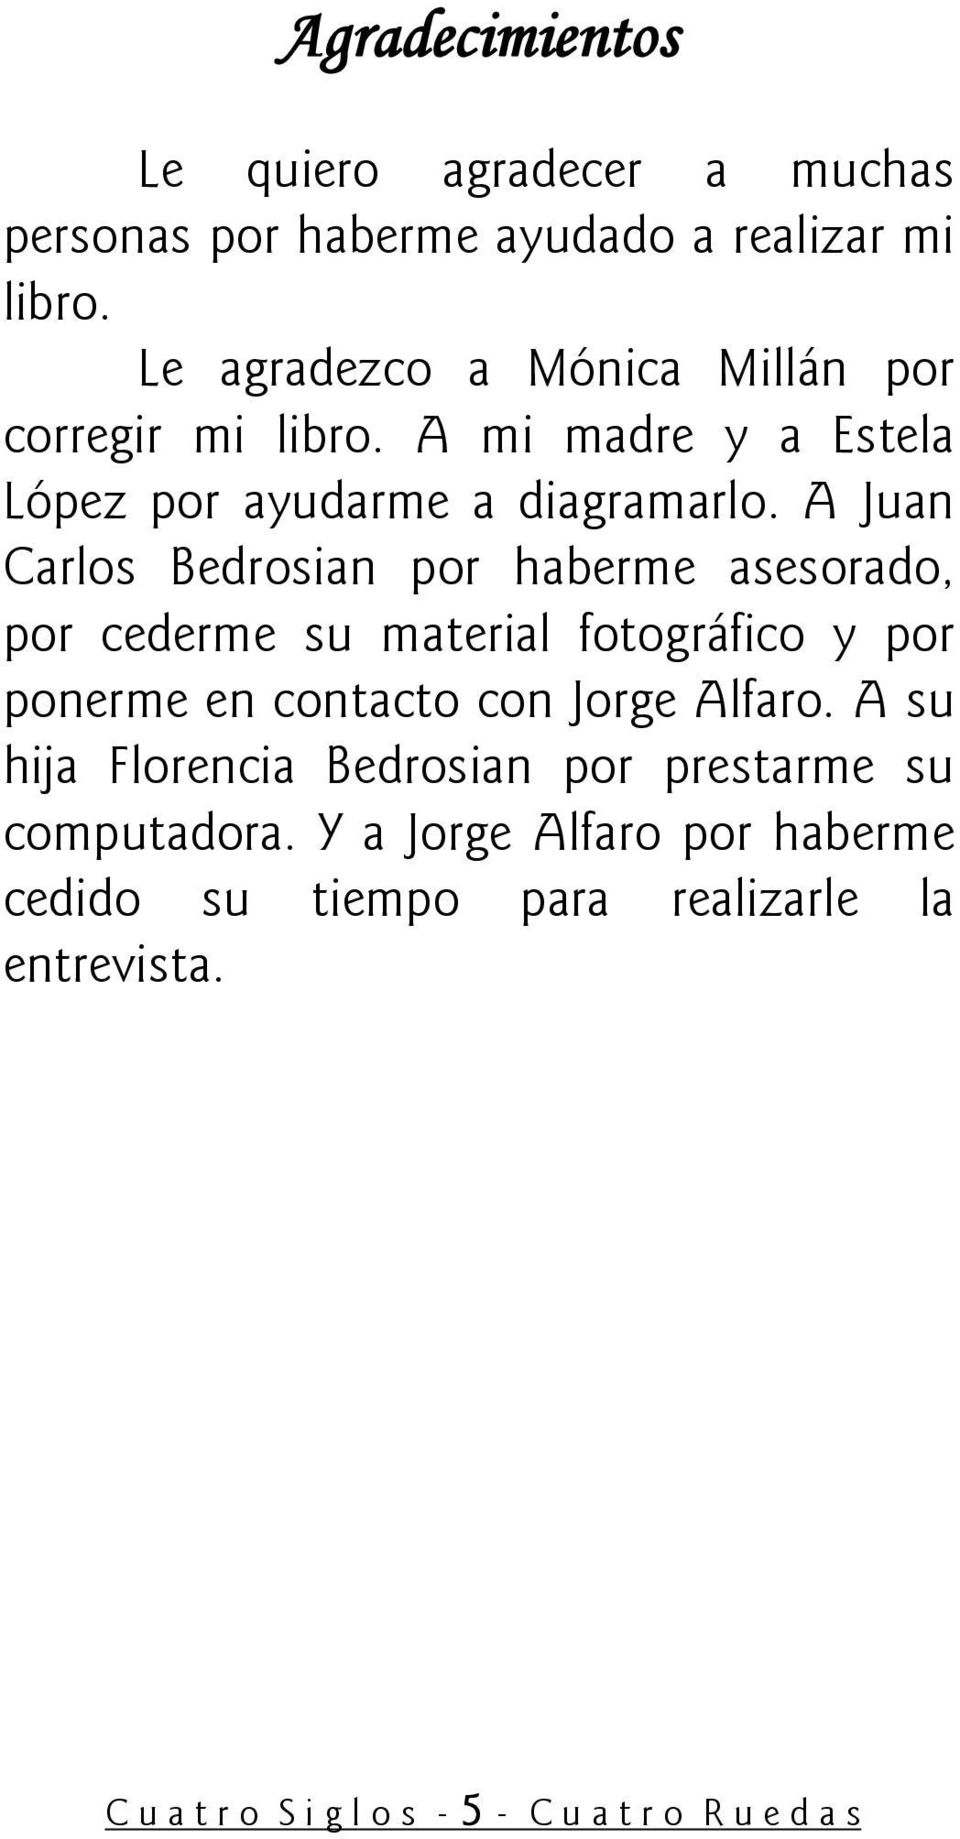 A Juan Carlos Bedrosian por haberme asesorado, por cederme su material fotográfico y por ponerme en contacto con Jorge Alfaro.